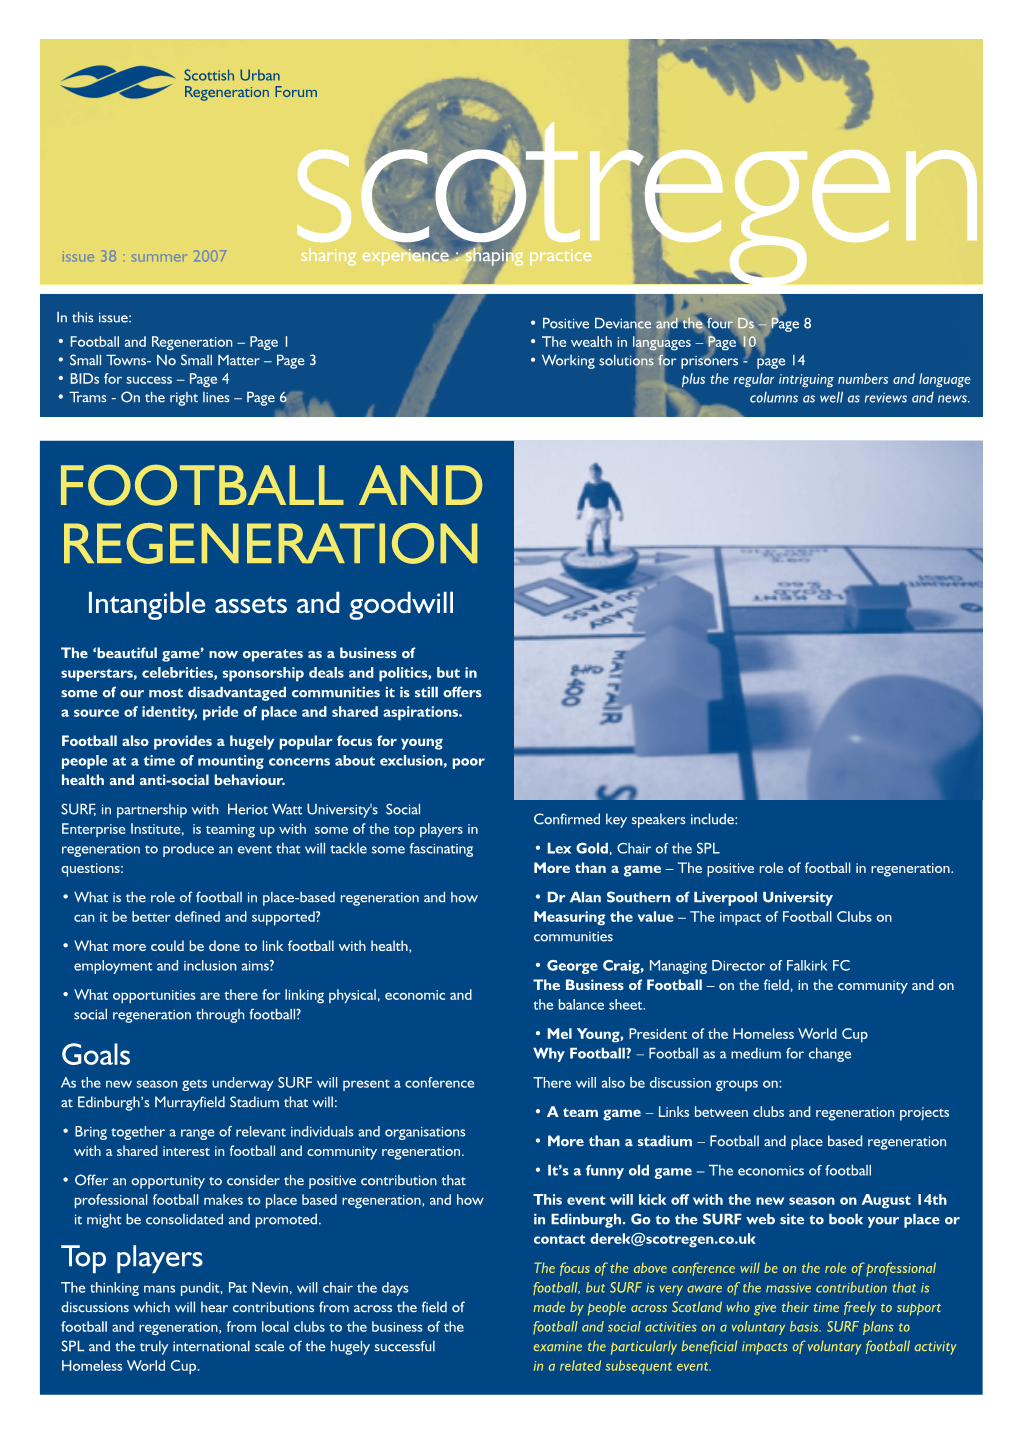 Scottish Regeneration Issue 38 (Summer 2007)